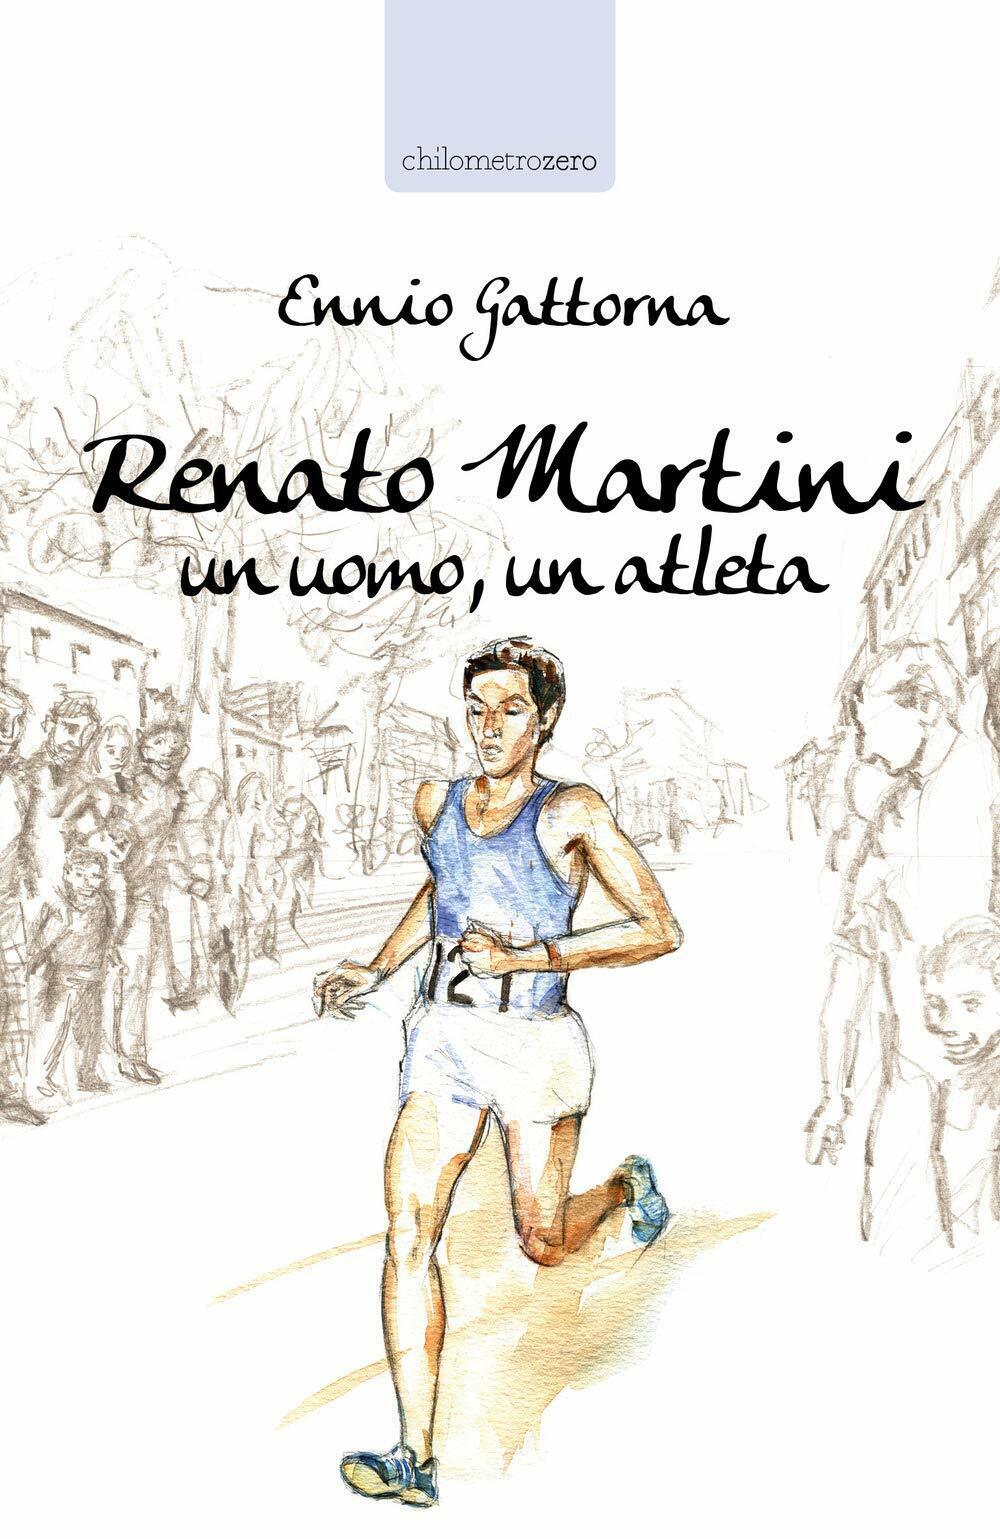 Renato Martini: Un uomo, un atleta - Ennio Gattorna - La torretta, 2019 libro usato